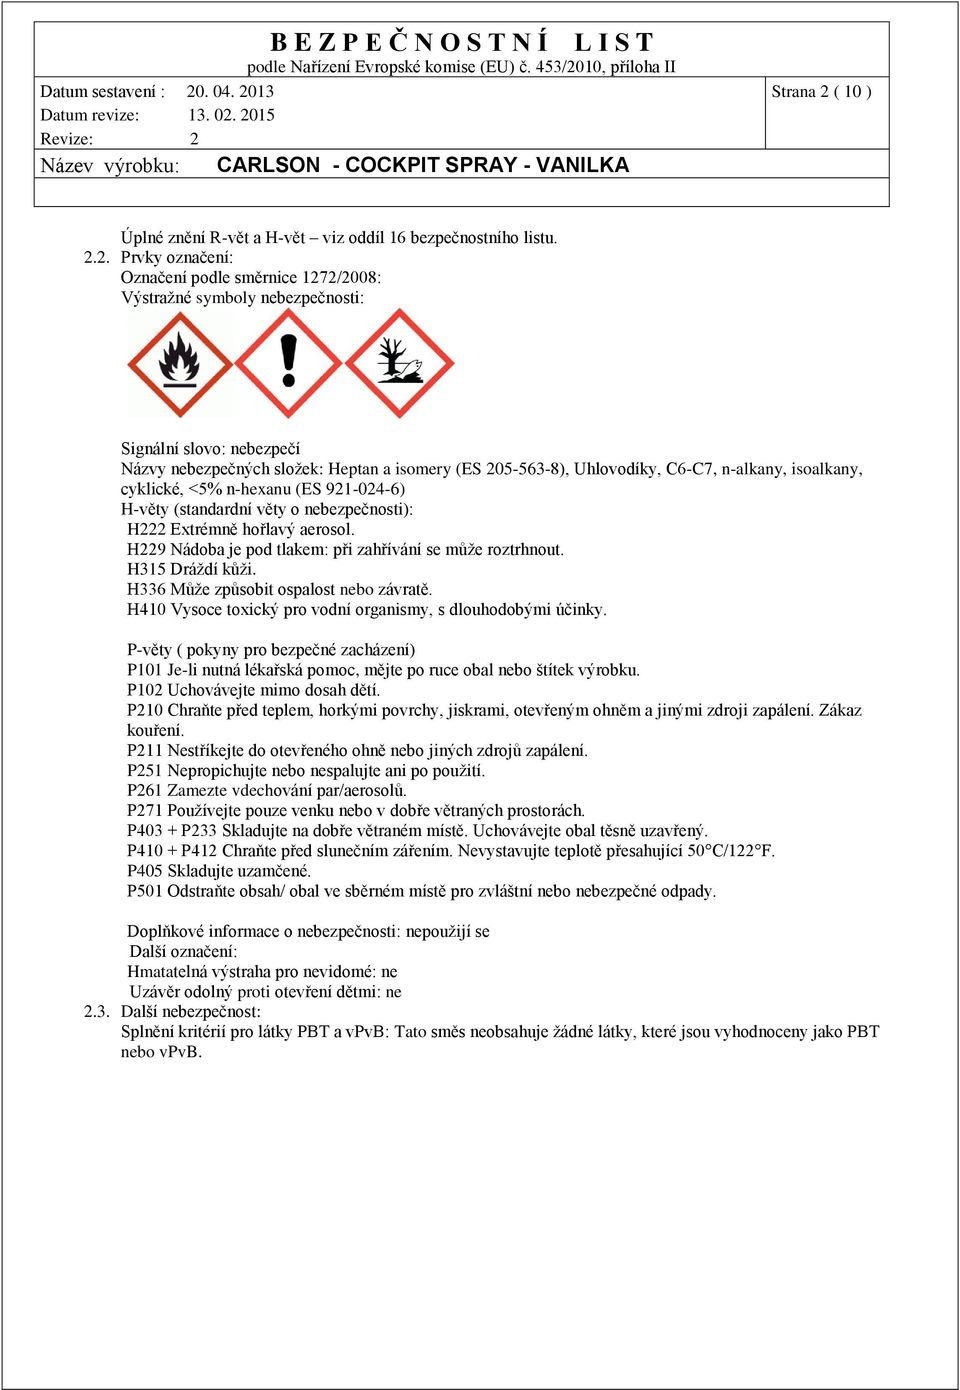 2. Prvky označení: Označení podle směrnice 1272/2008: Výstražné symboly nebezpečnosti: Signální slovo: nebezpečí Názvy nebezpečných složek: Heptan a isomery (ES 205-563-8), Uhlovodíky, C6-C7,